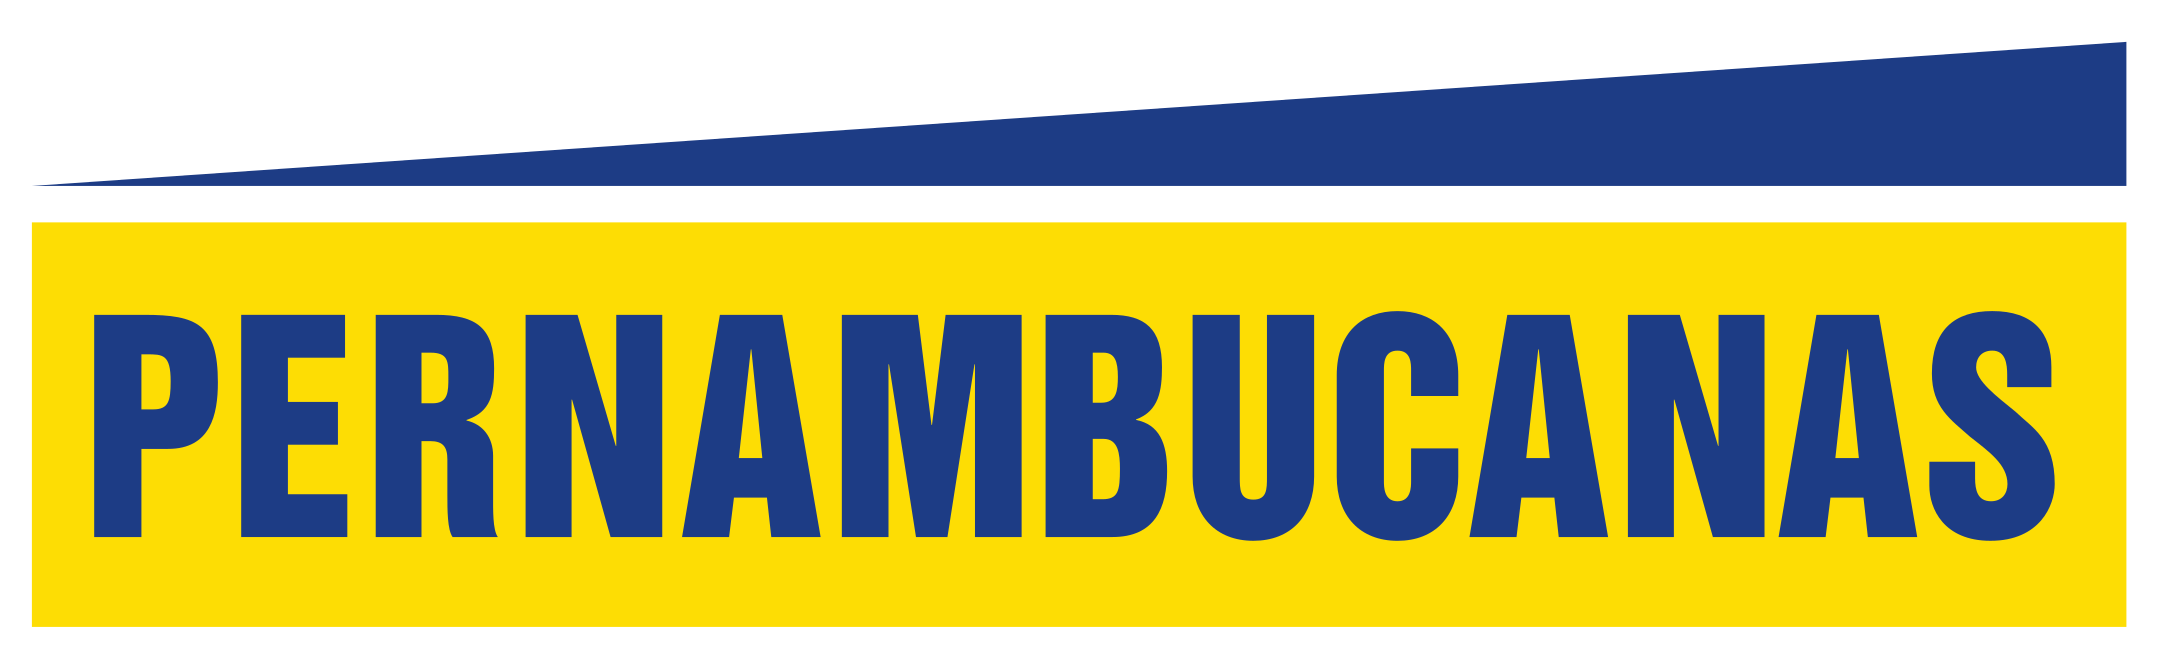 Pernambucanas Logo.